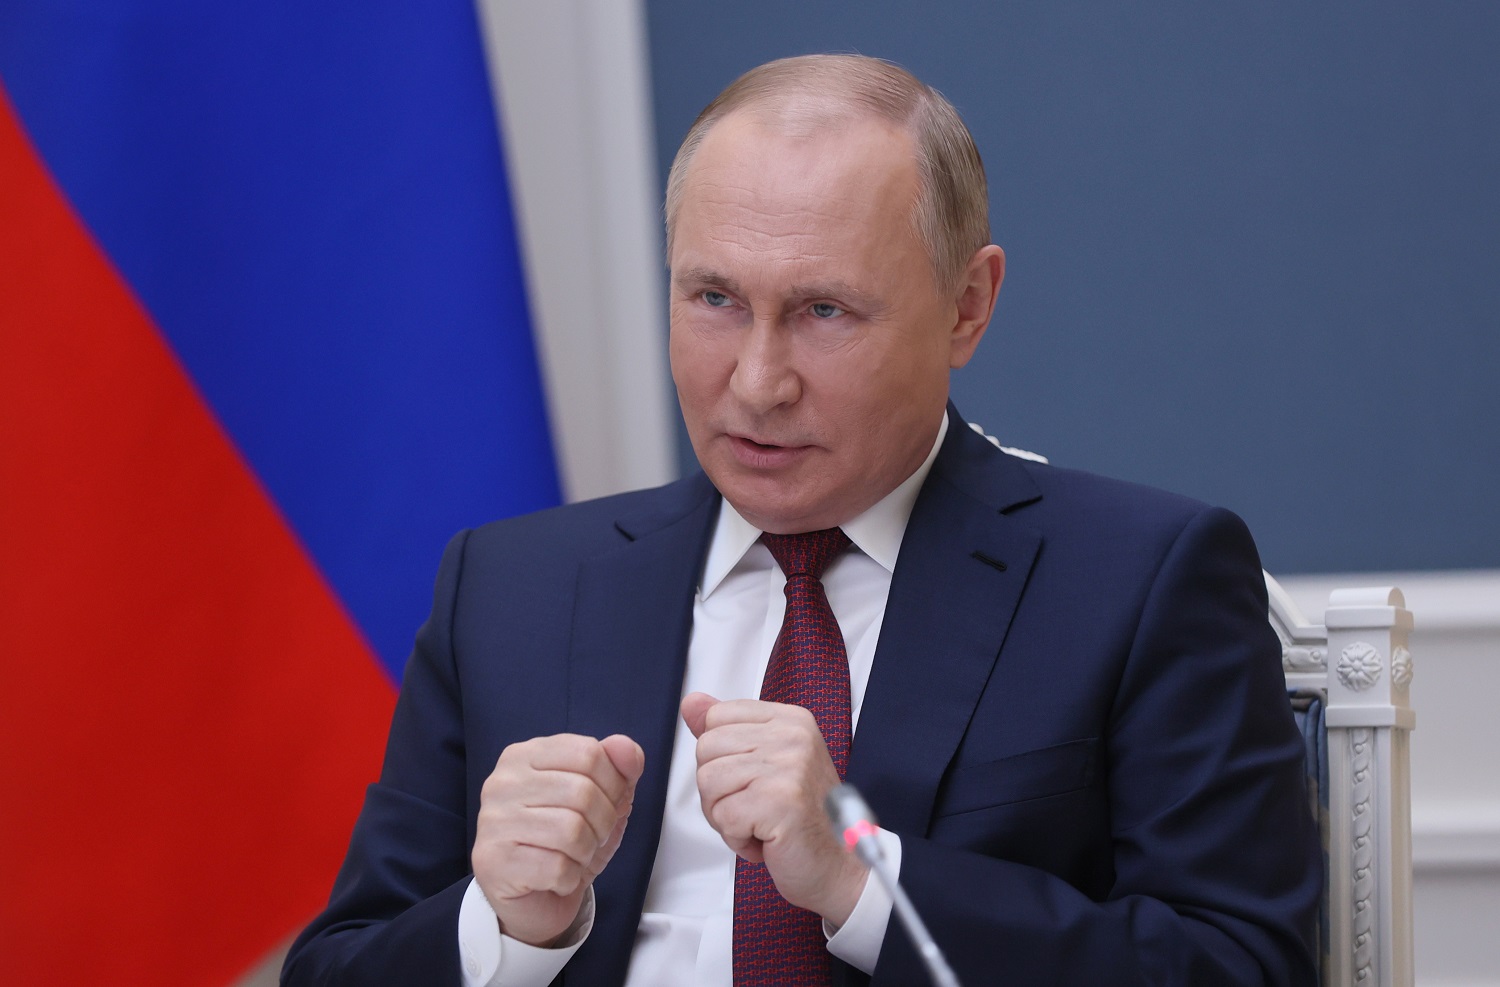 V. Putinas nusitaikė į Ukrainą: reikalauja NATO nutraukti plėtrą į Rytus